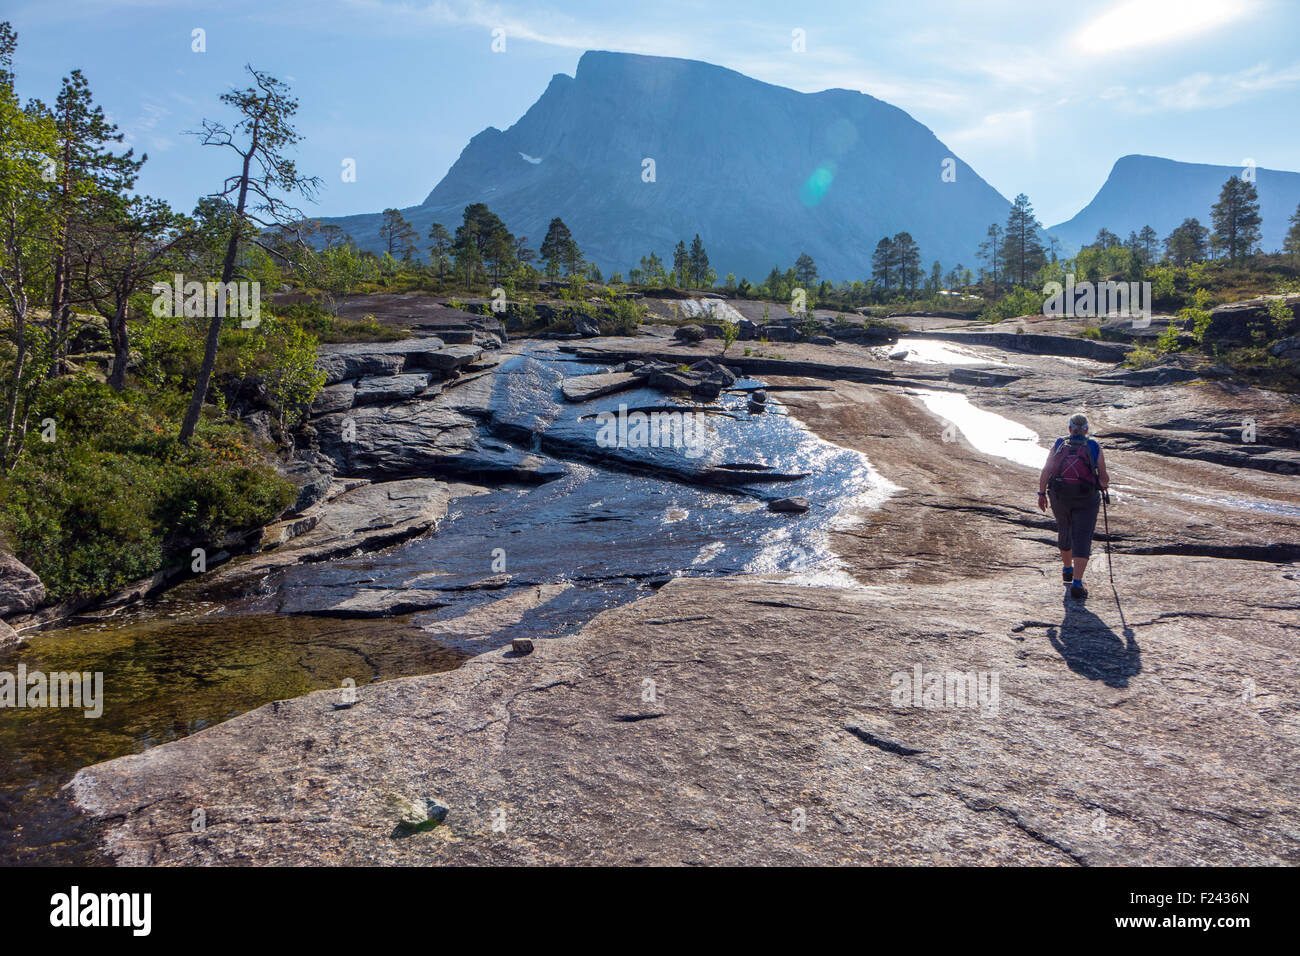 Petits mondes solitaires figure approchant Verdenssvaet dalle, immense plaque de granit près de Narvik, Arctique Noway Banque D'Images